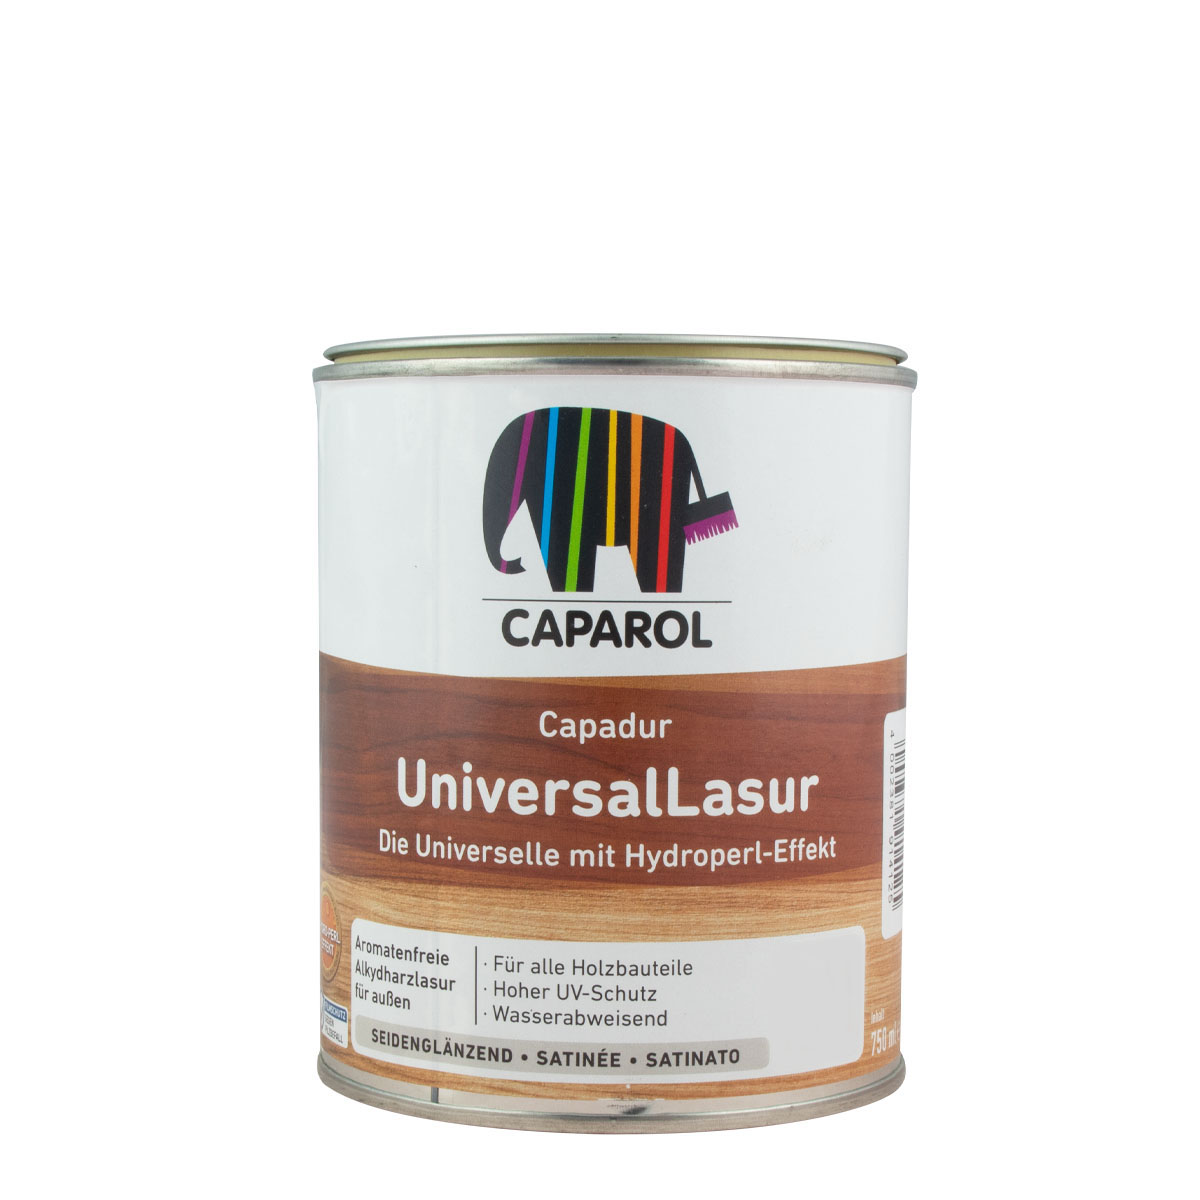 Caparol Capadur Universal Lasur 750ml, Mahagoni